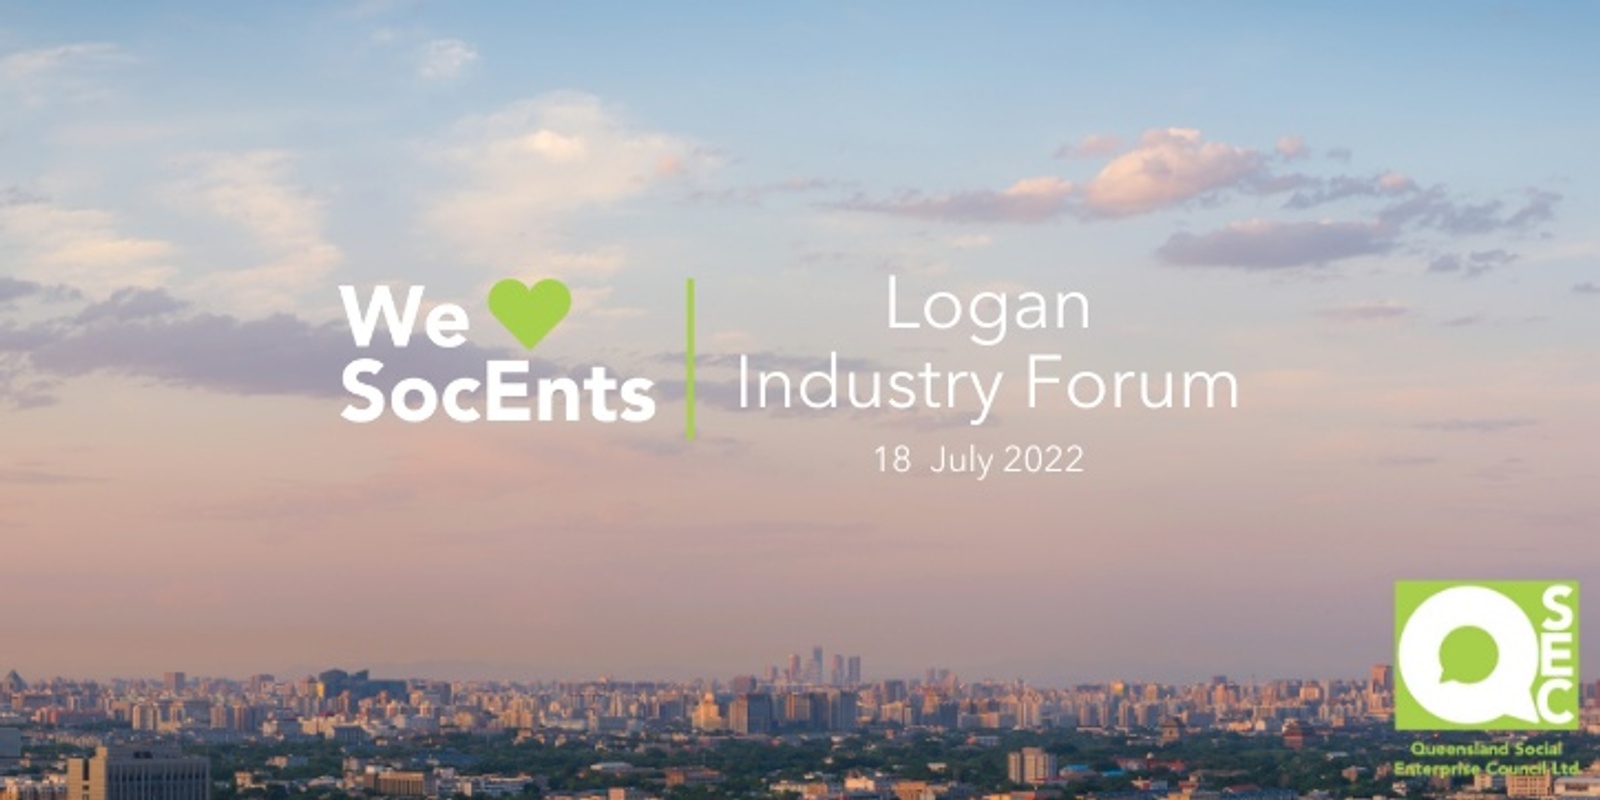 Banner image for Logan Social Enterprise Industry Forum  #qsocent